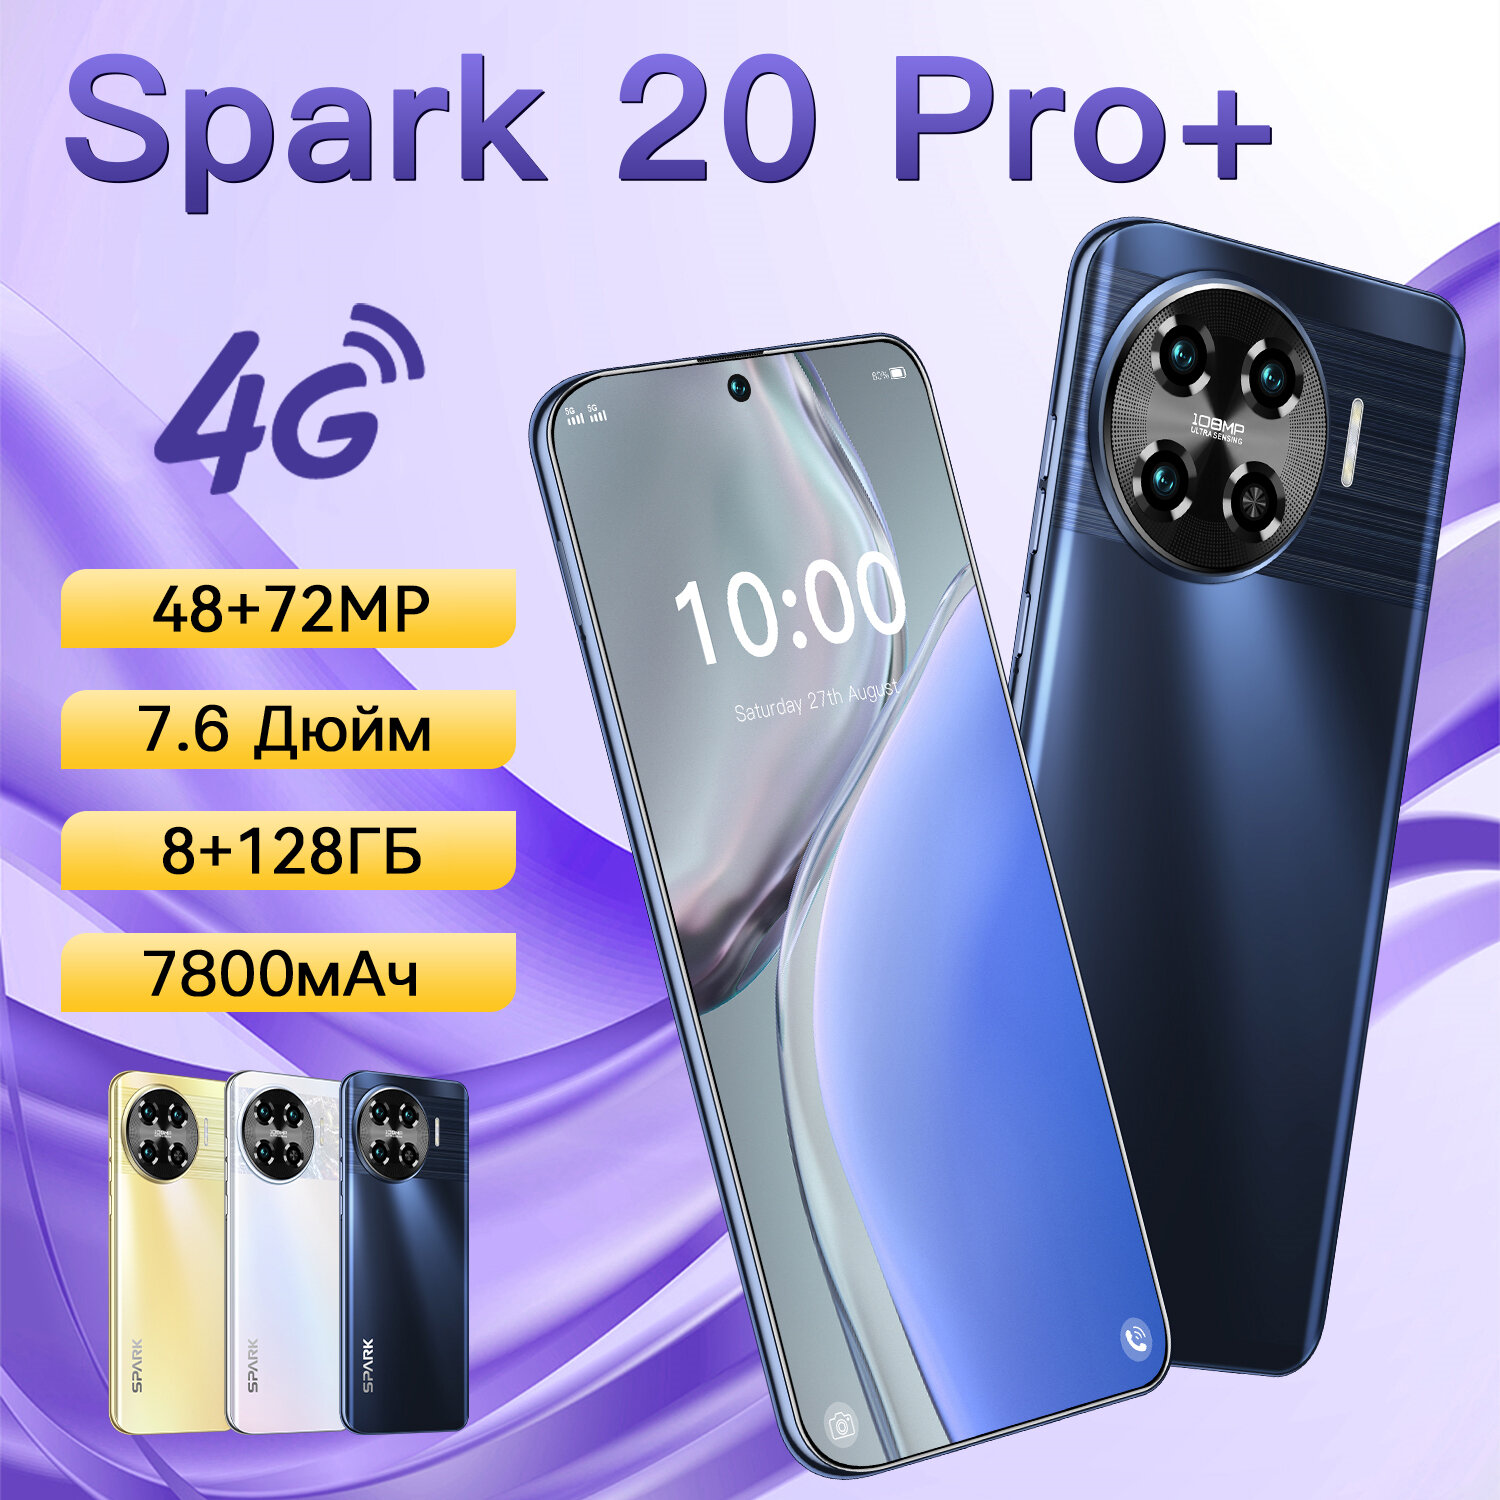 Cмартфон ZUNYI Spark 20 Pro + 4G с 7,6-дюймовым экраном ultimate edition поддерживает мобильные телефоны с поддержкой Google Play, игр и развлечений,8 Г + 128 г, черный